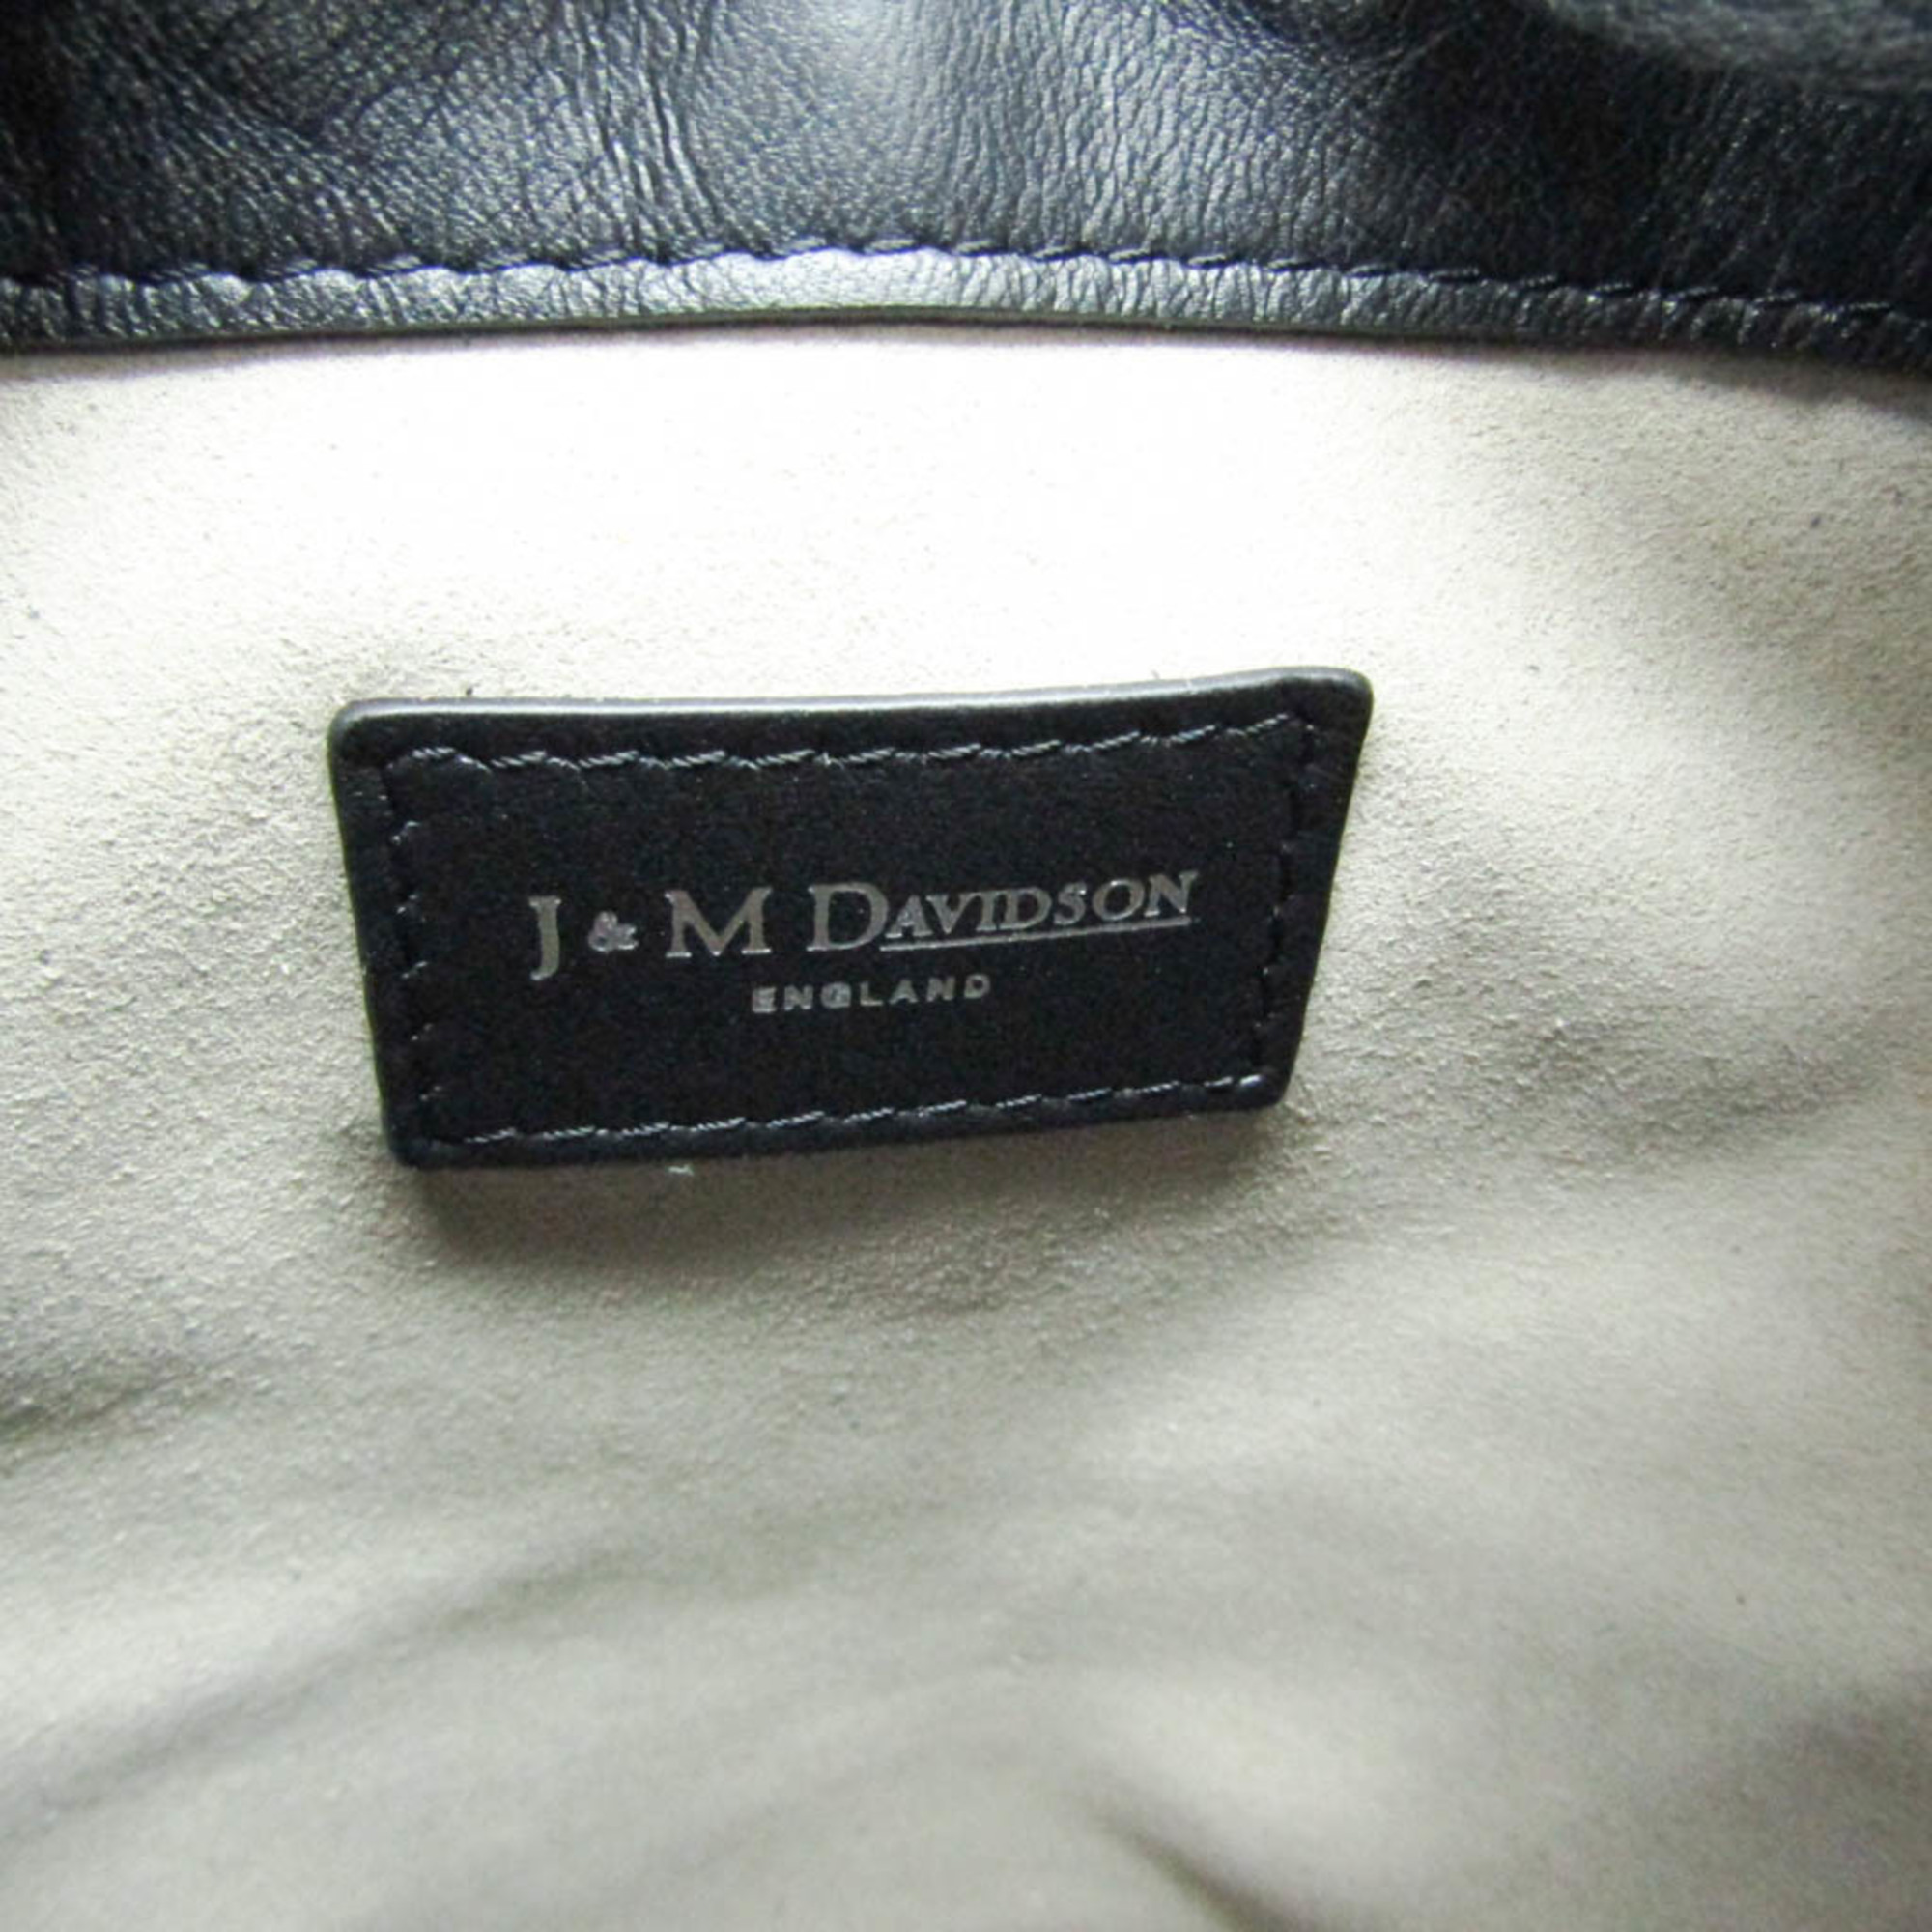 J&M Davidson Carnival Women's Leather Shoulder Bag,Tote Bag Black